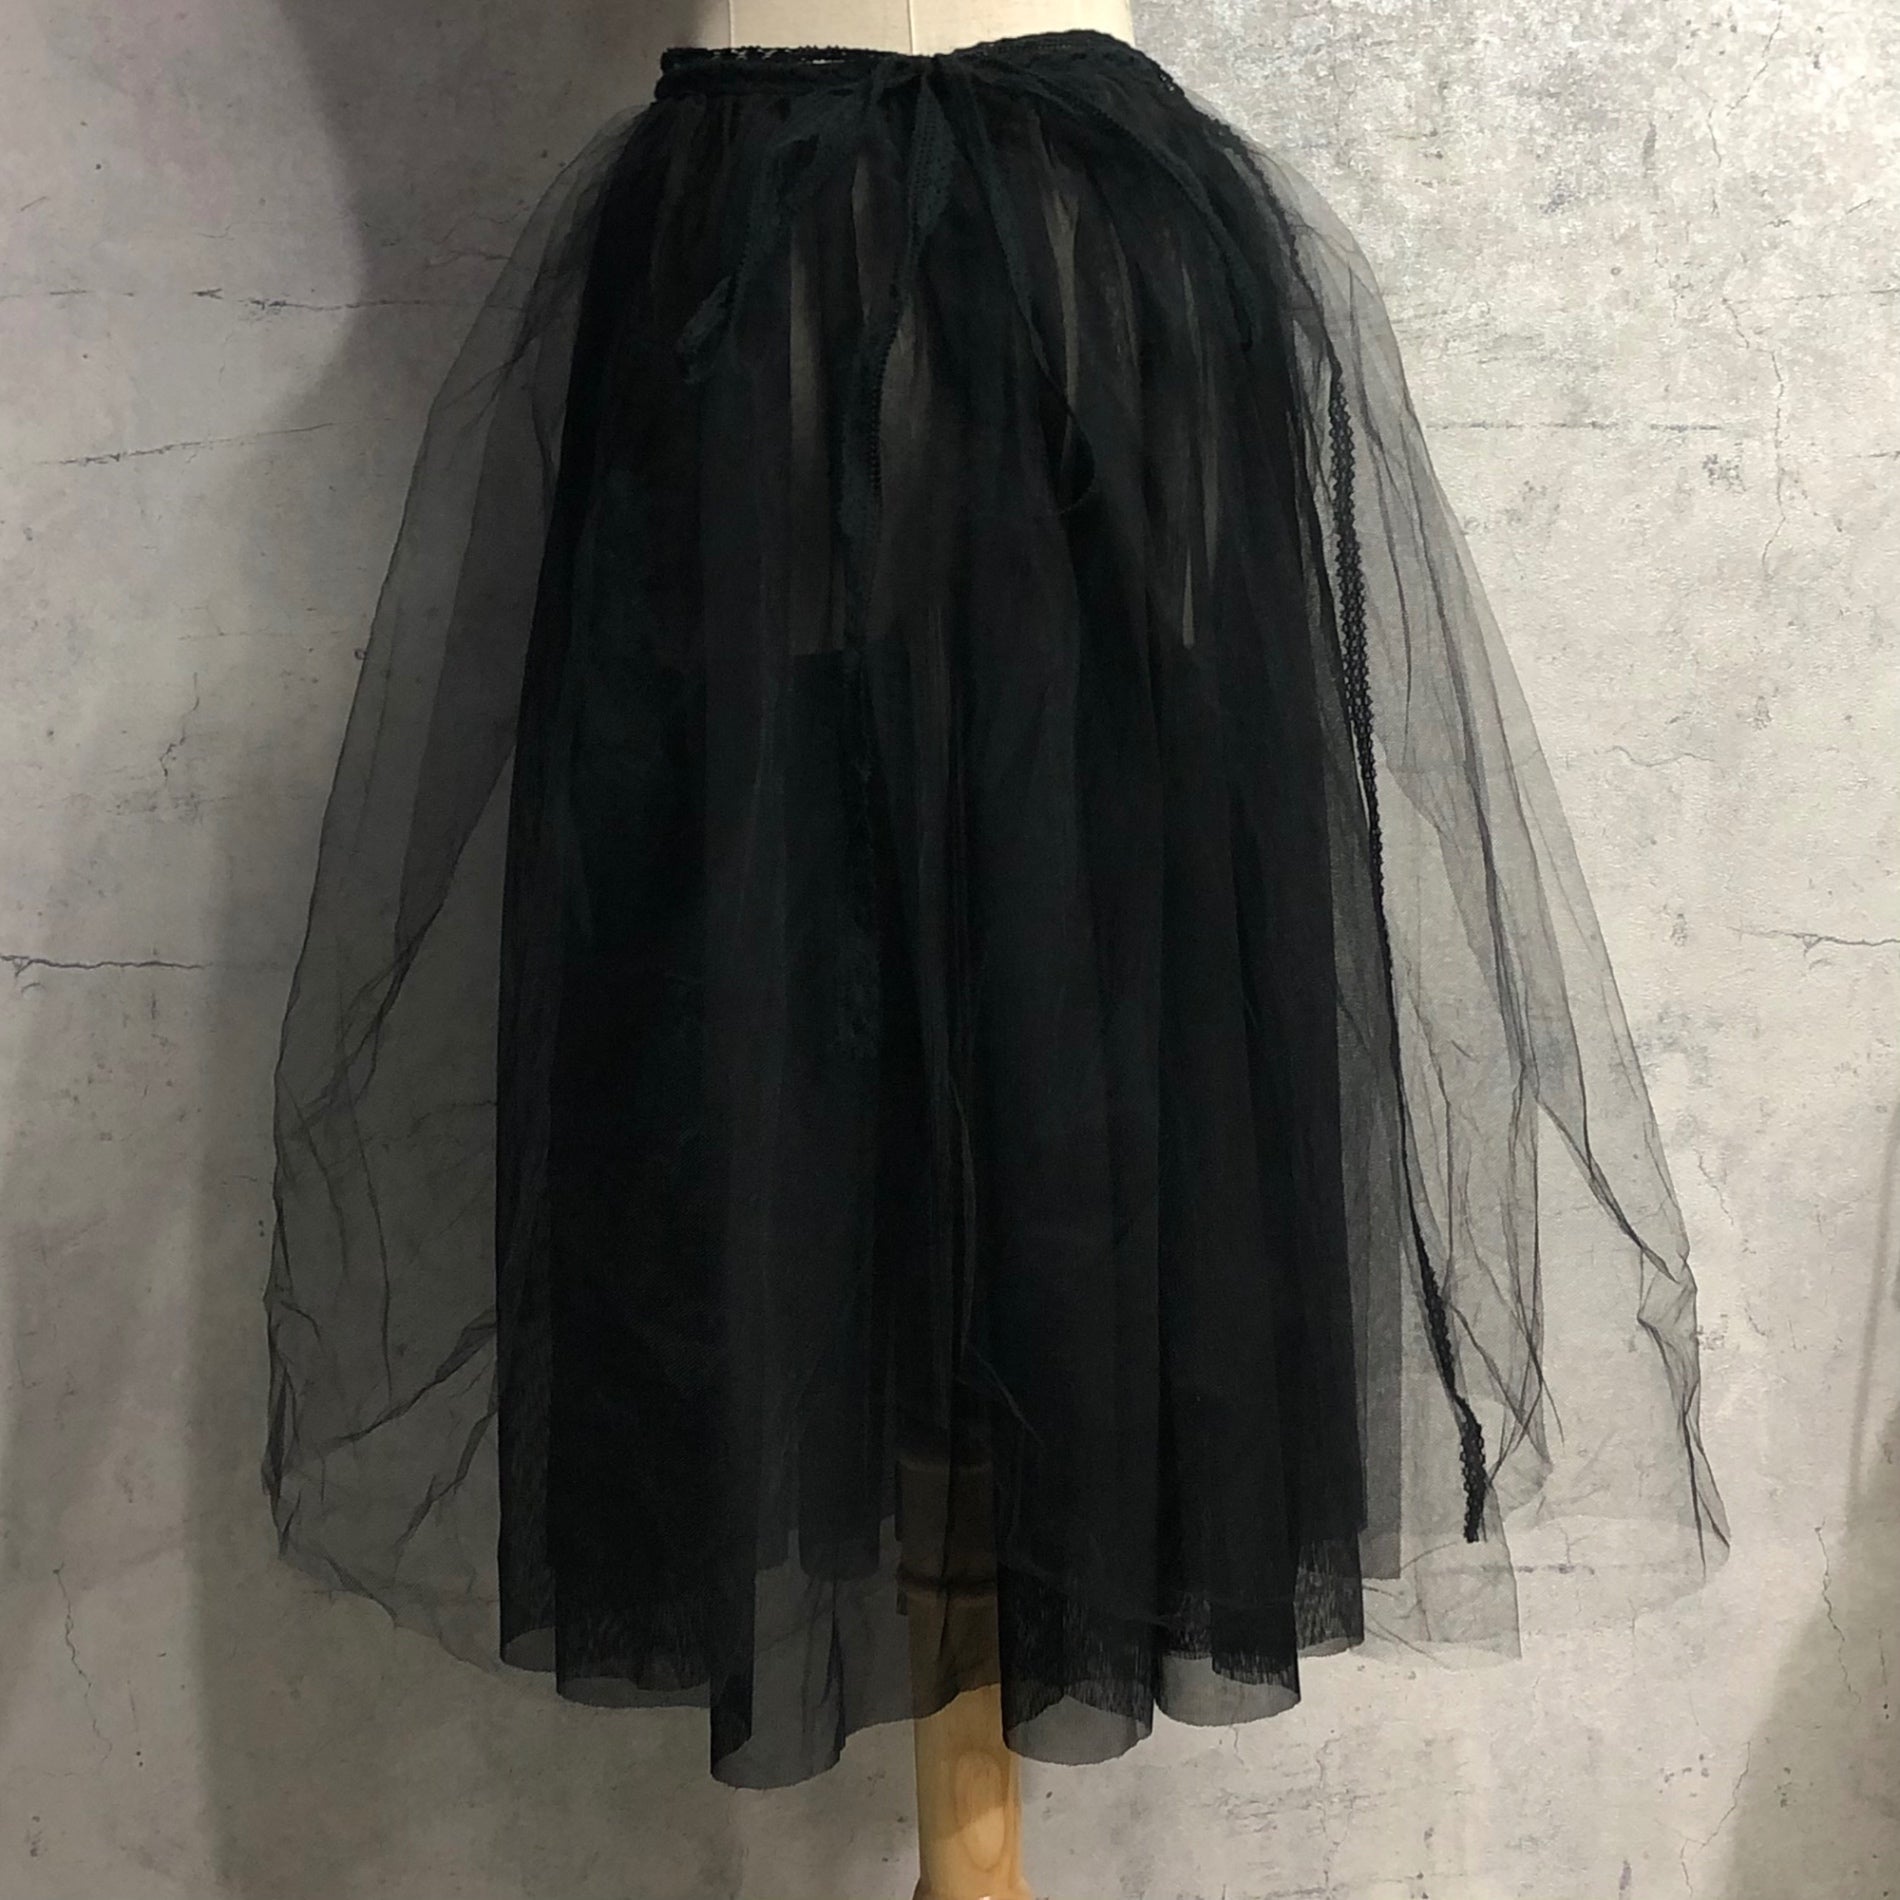 Vlas Blomme(ヴラスブラム) Tulle wrapped skirt チュール 巻きスカート 135237 FREE ブラック